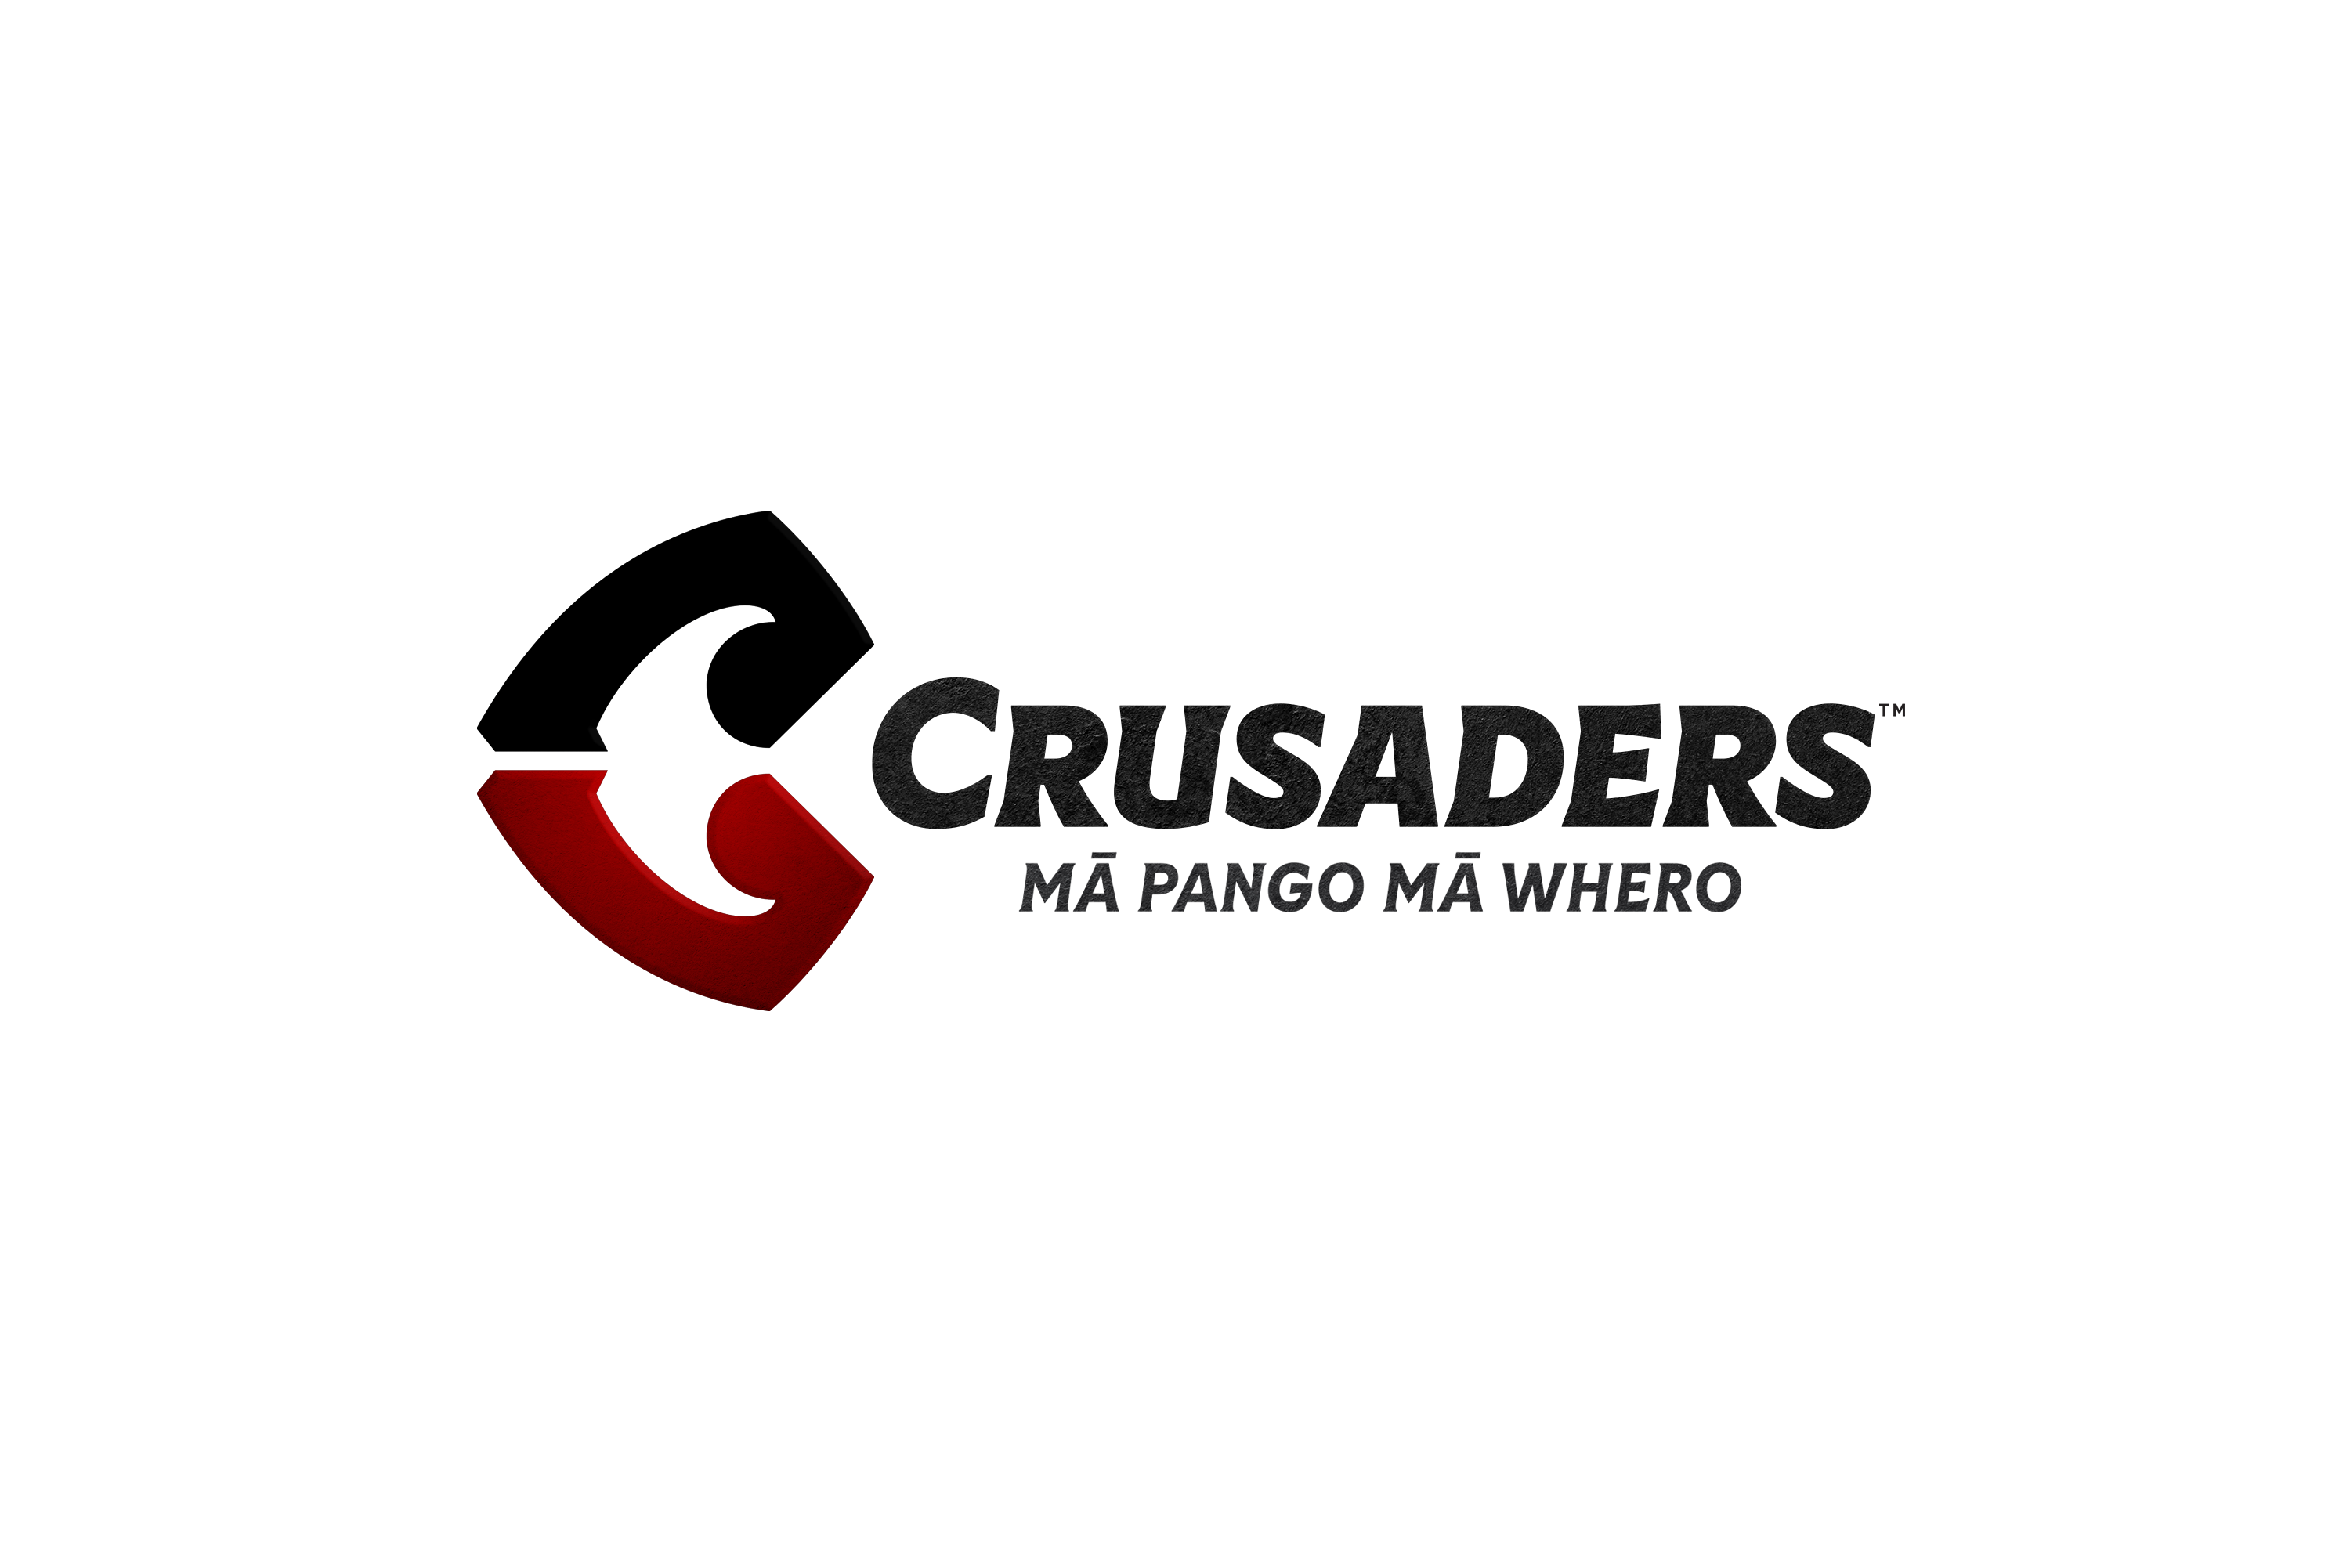 Crusaders Logo